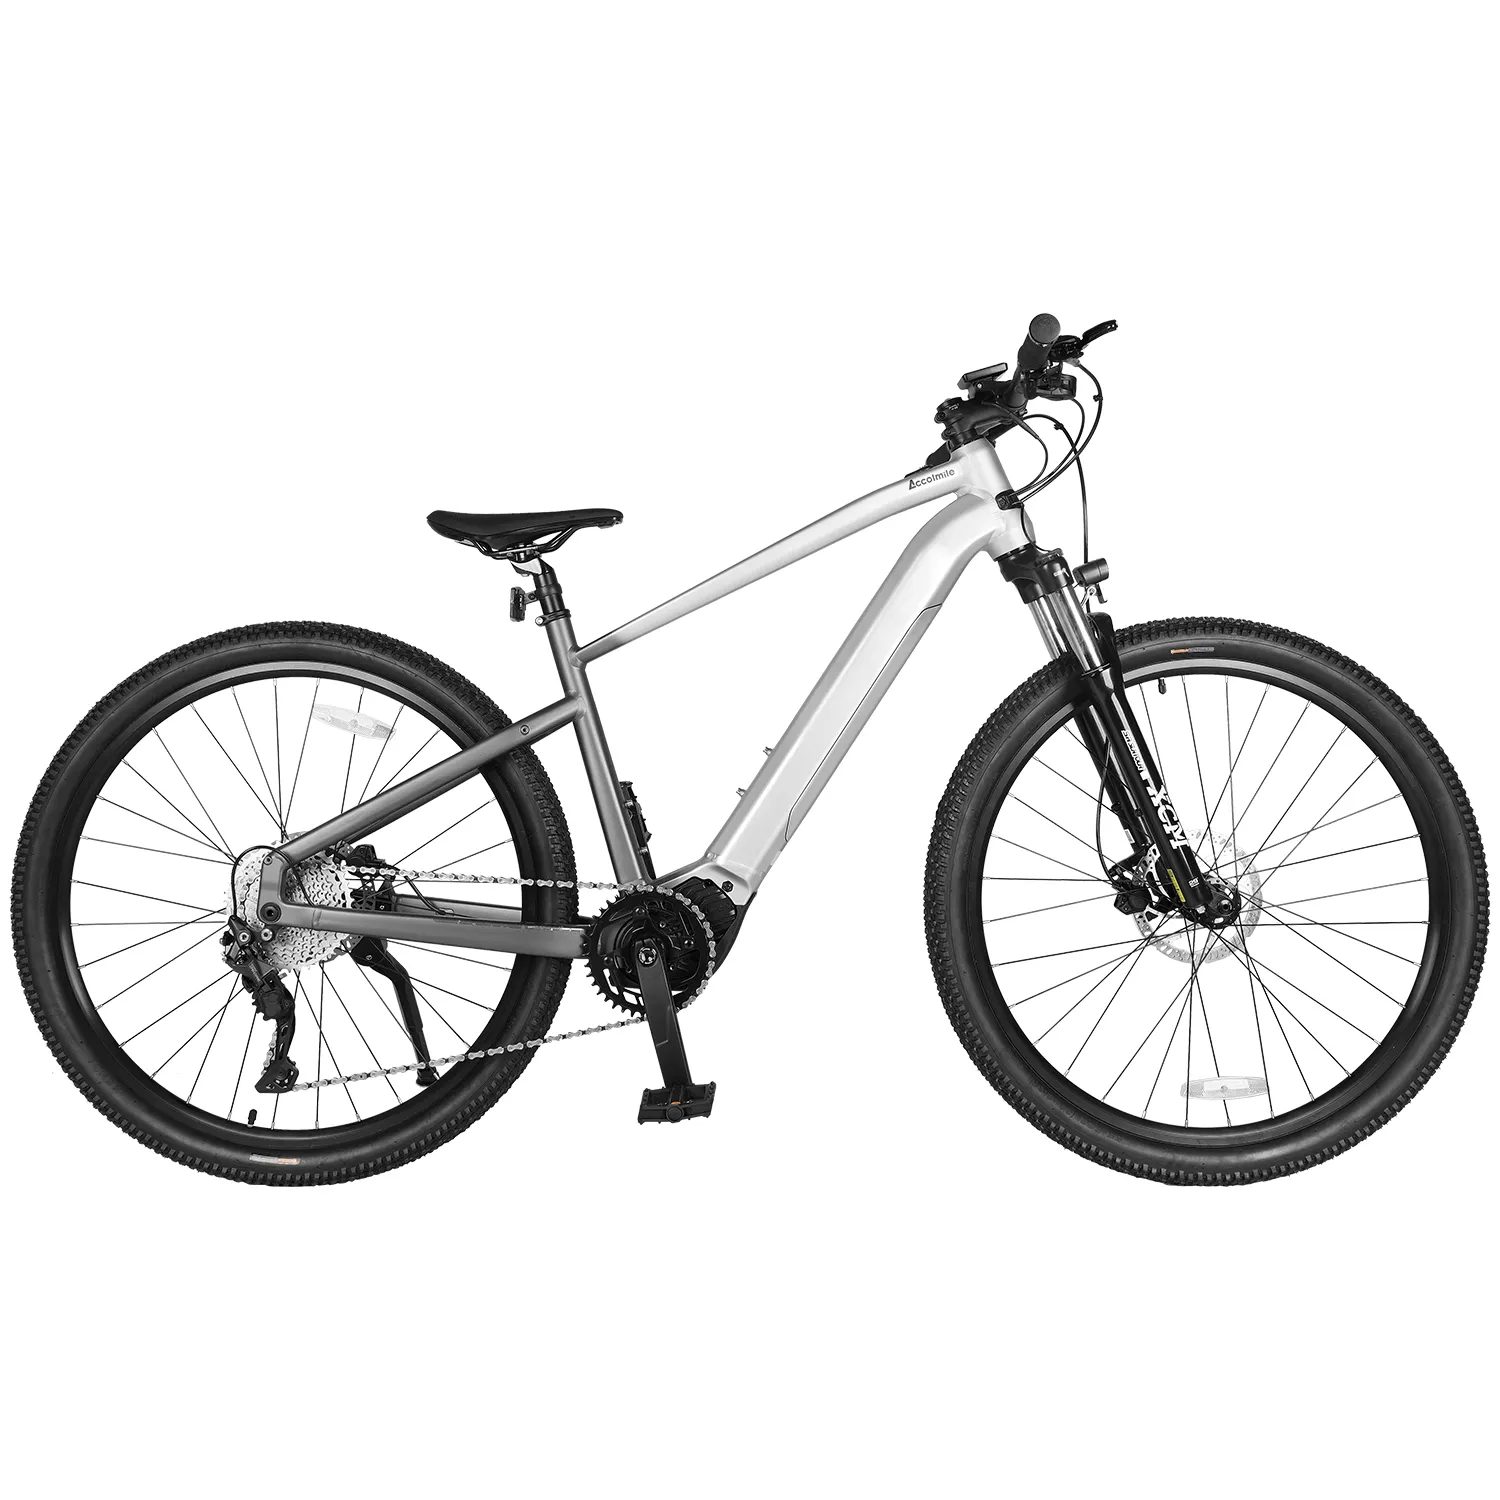 Spedizione gratuita 29 "mountain bike elettrica bafang M510 36v 250w ebike MM G522.250C 8fun mid motor bici elettrica magazzino ue